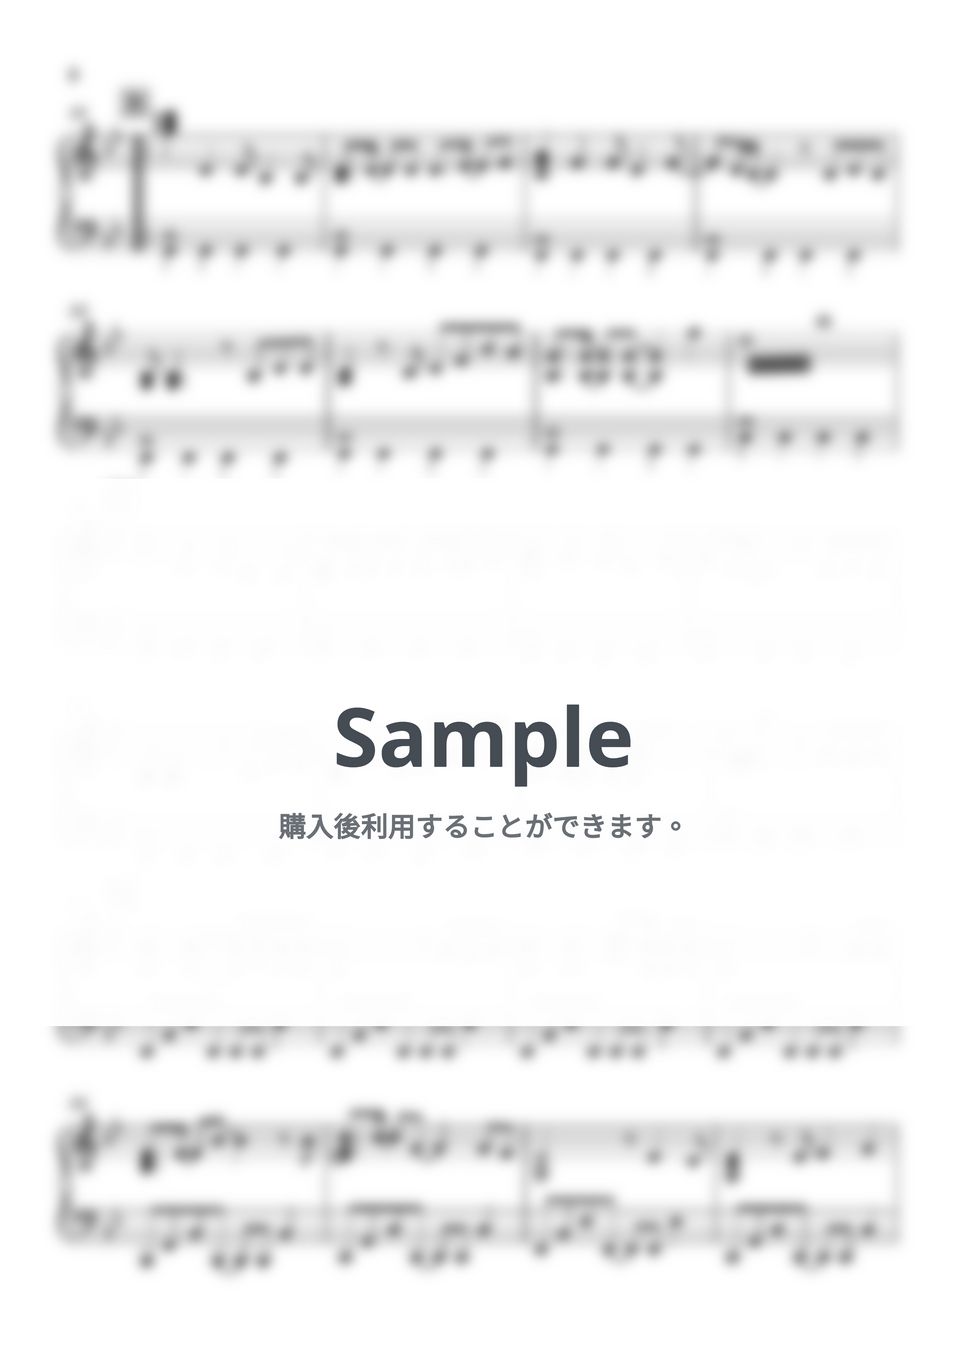 米倉千尋 - 嵐の中で輝いて (機動戦士ガンダム) by Piano Lovers. jp